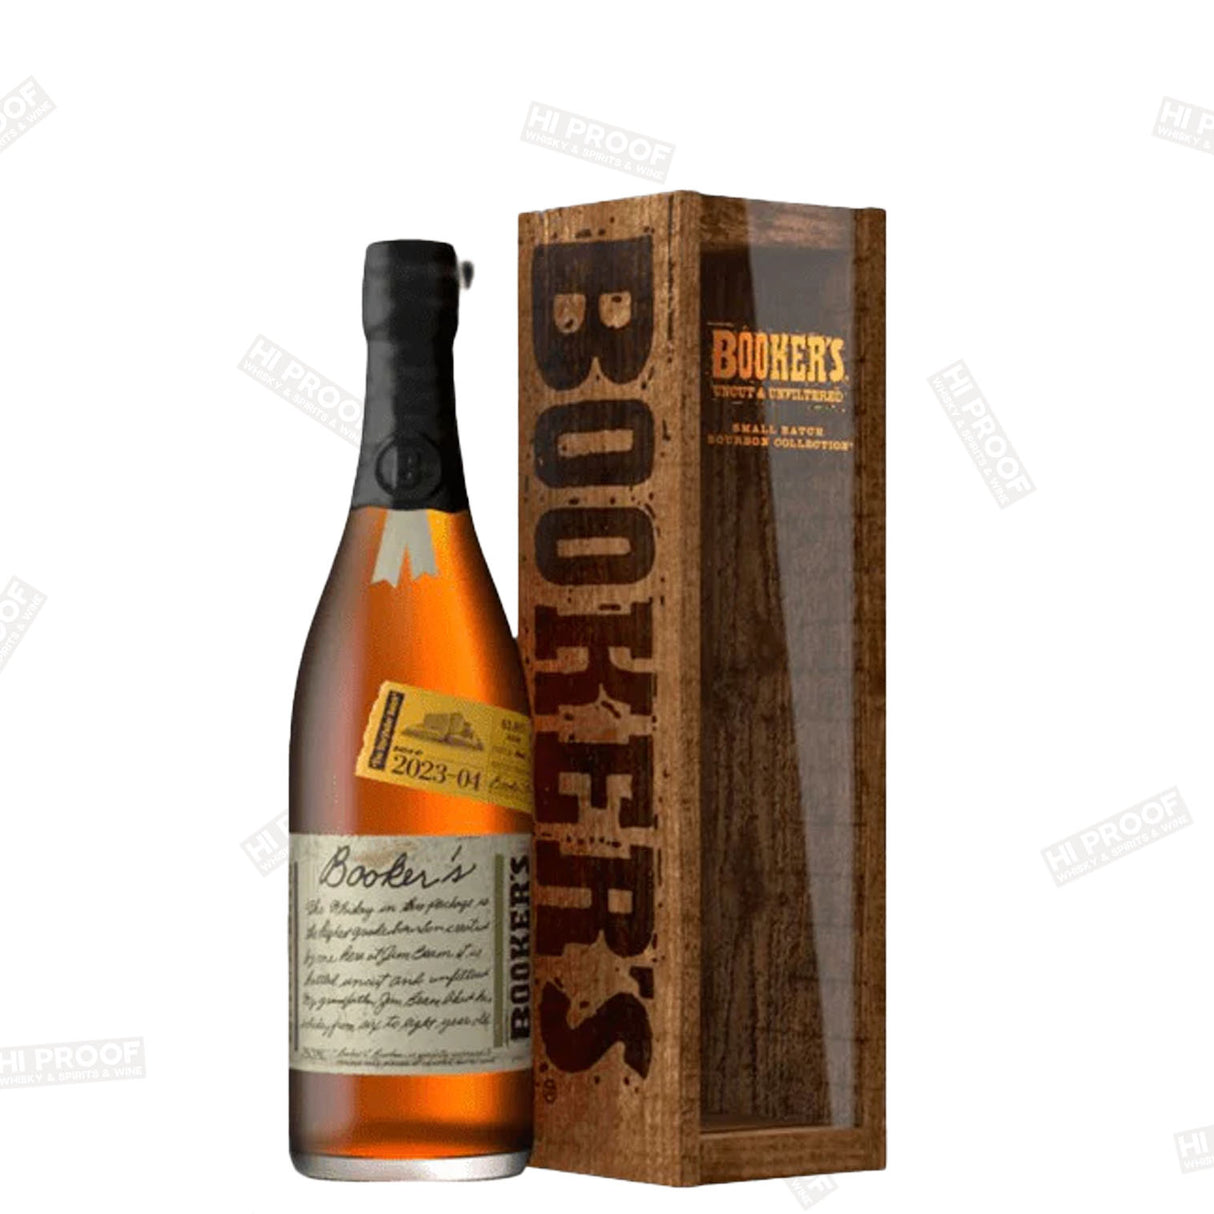 Booker's Bourbon 2023-04 "Storyteller Batch" 127.8 Proof